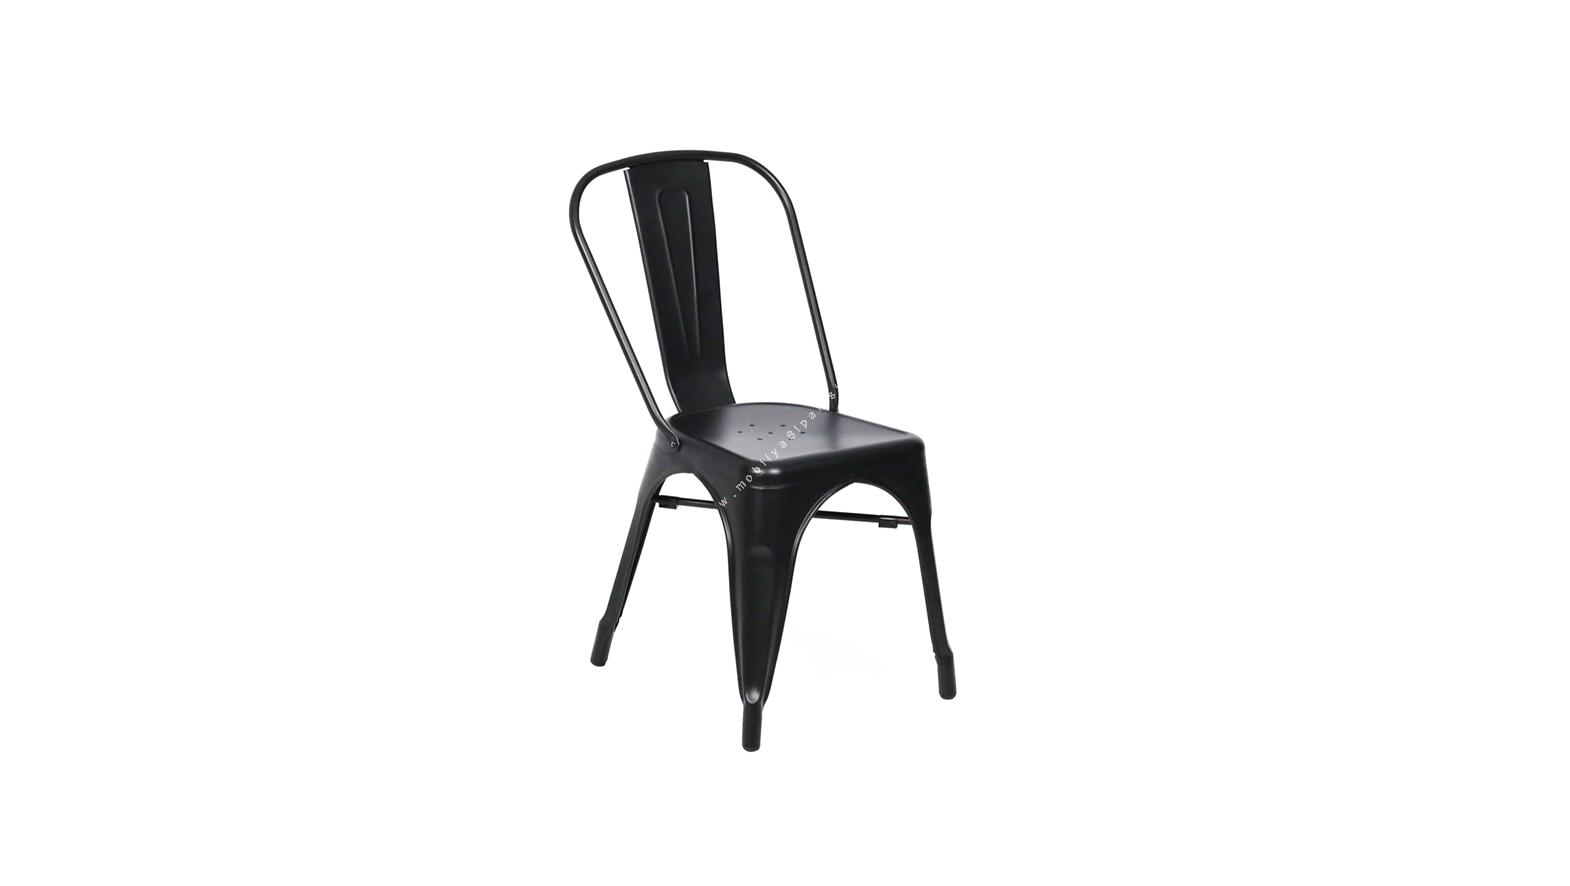 pauch boyalı klasik sandalye